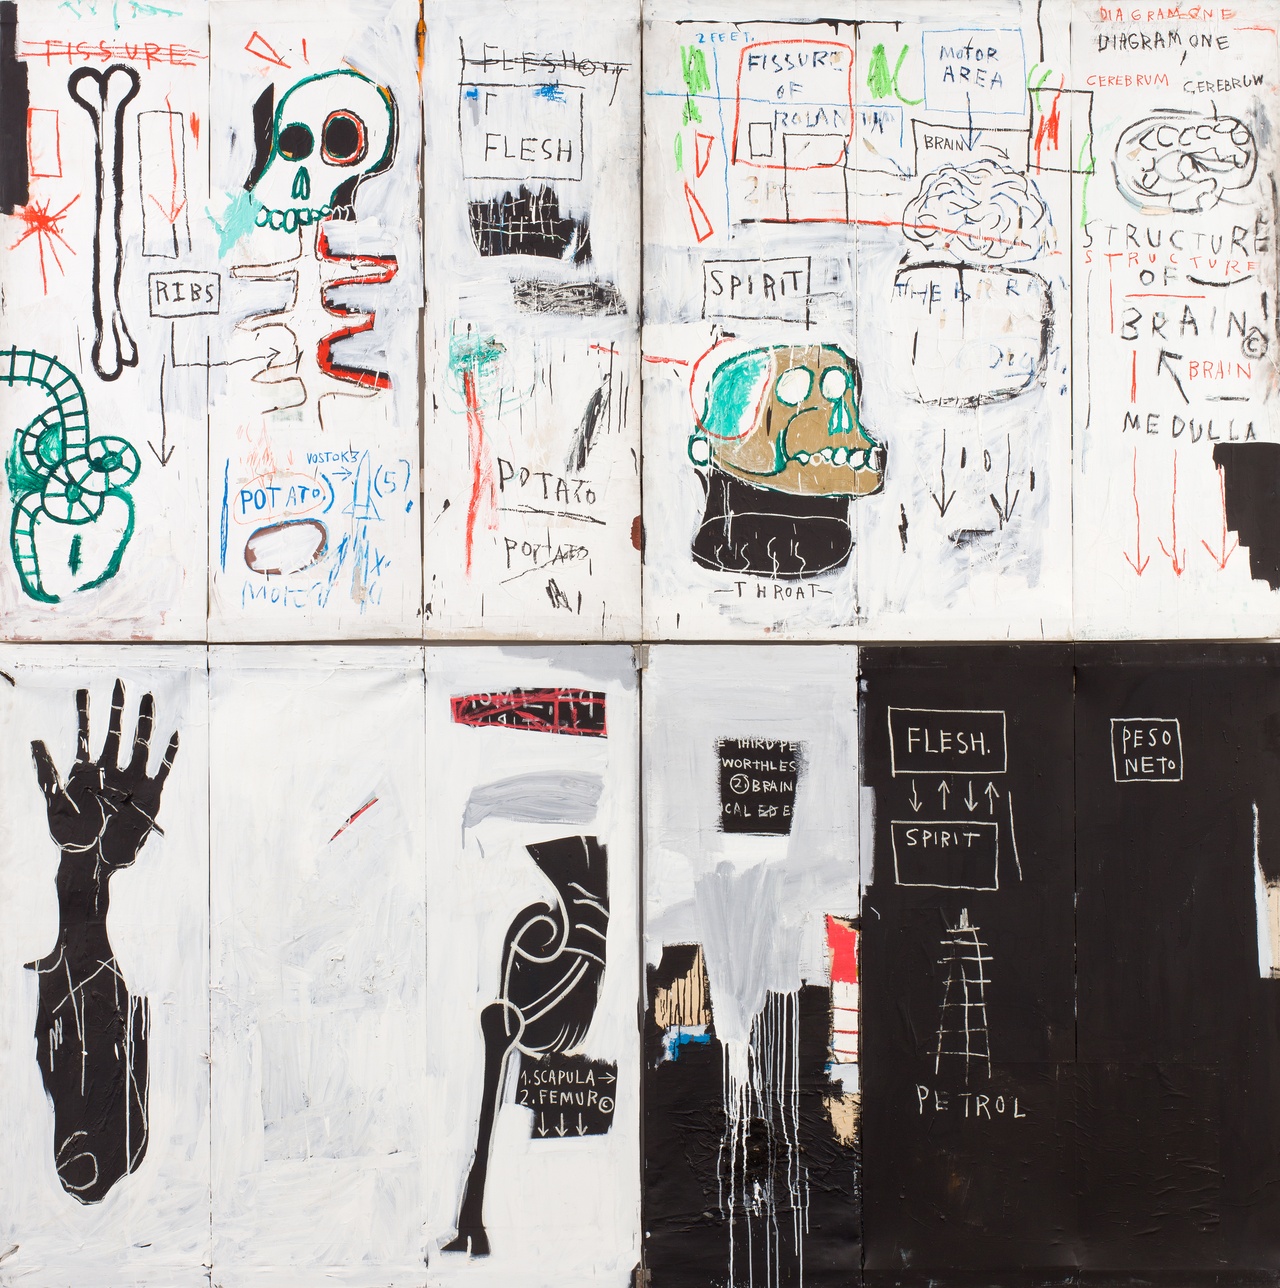 Jean-Michel Basquiat, „Flesh and Spirit“, 1982-83